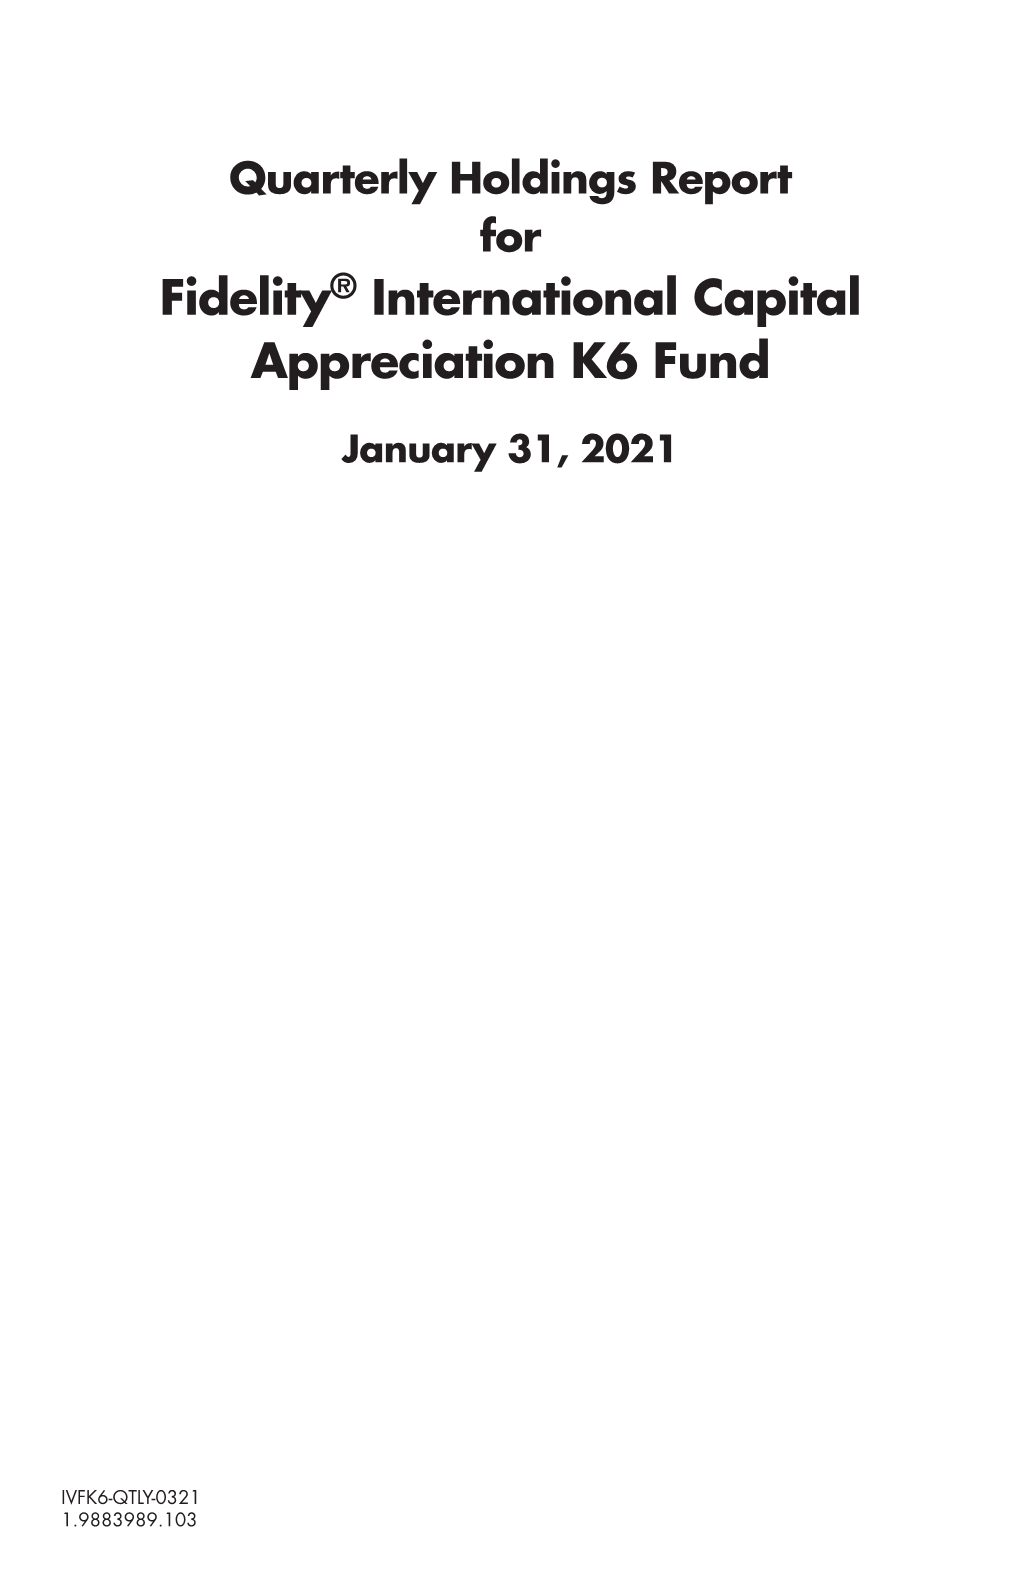 Fidelity® International Capital Appreciation K6 Fund